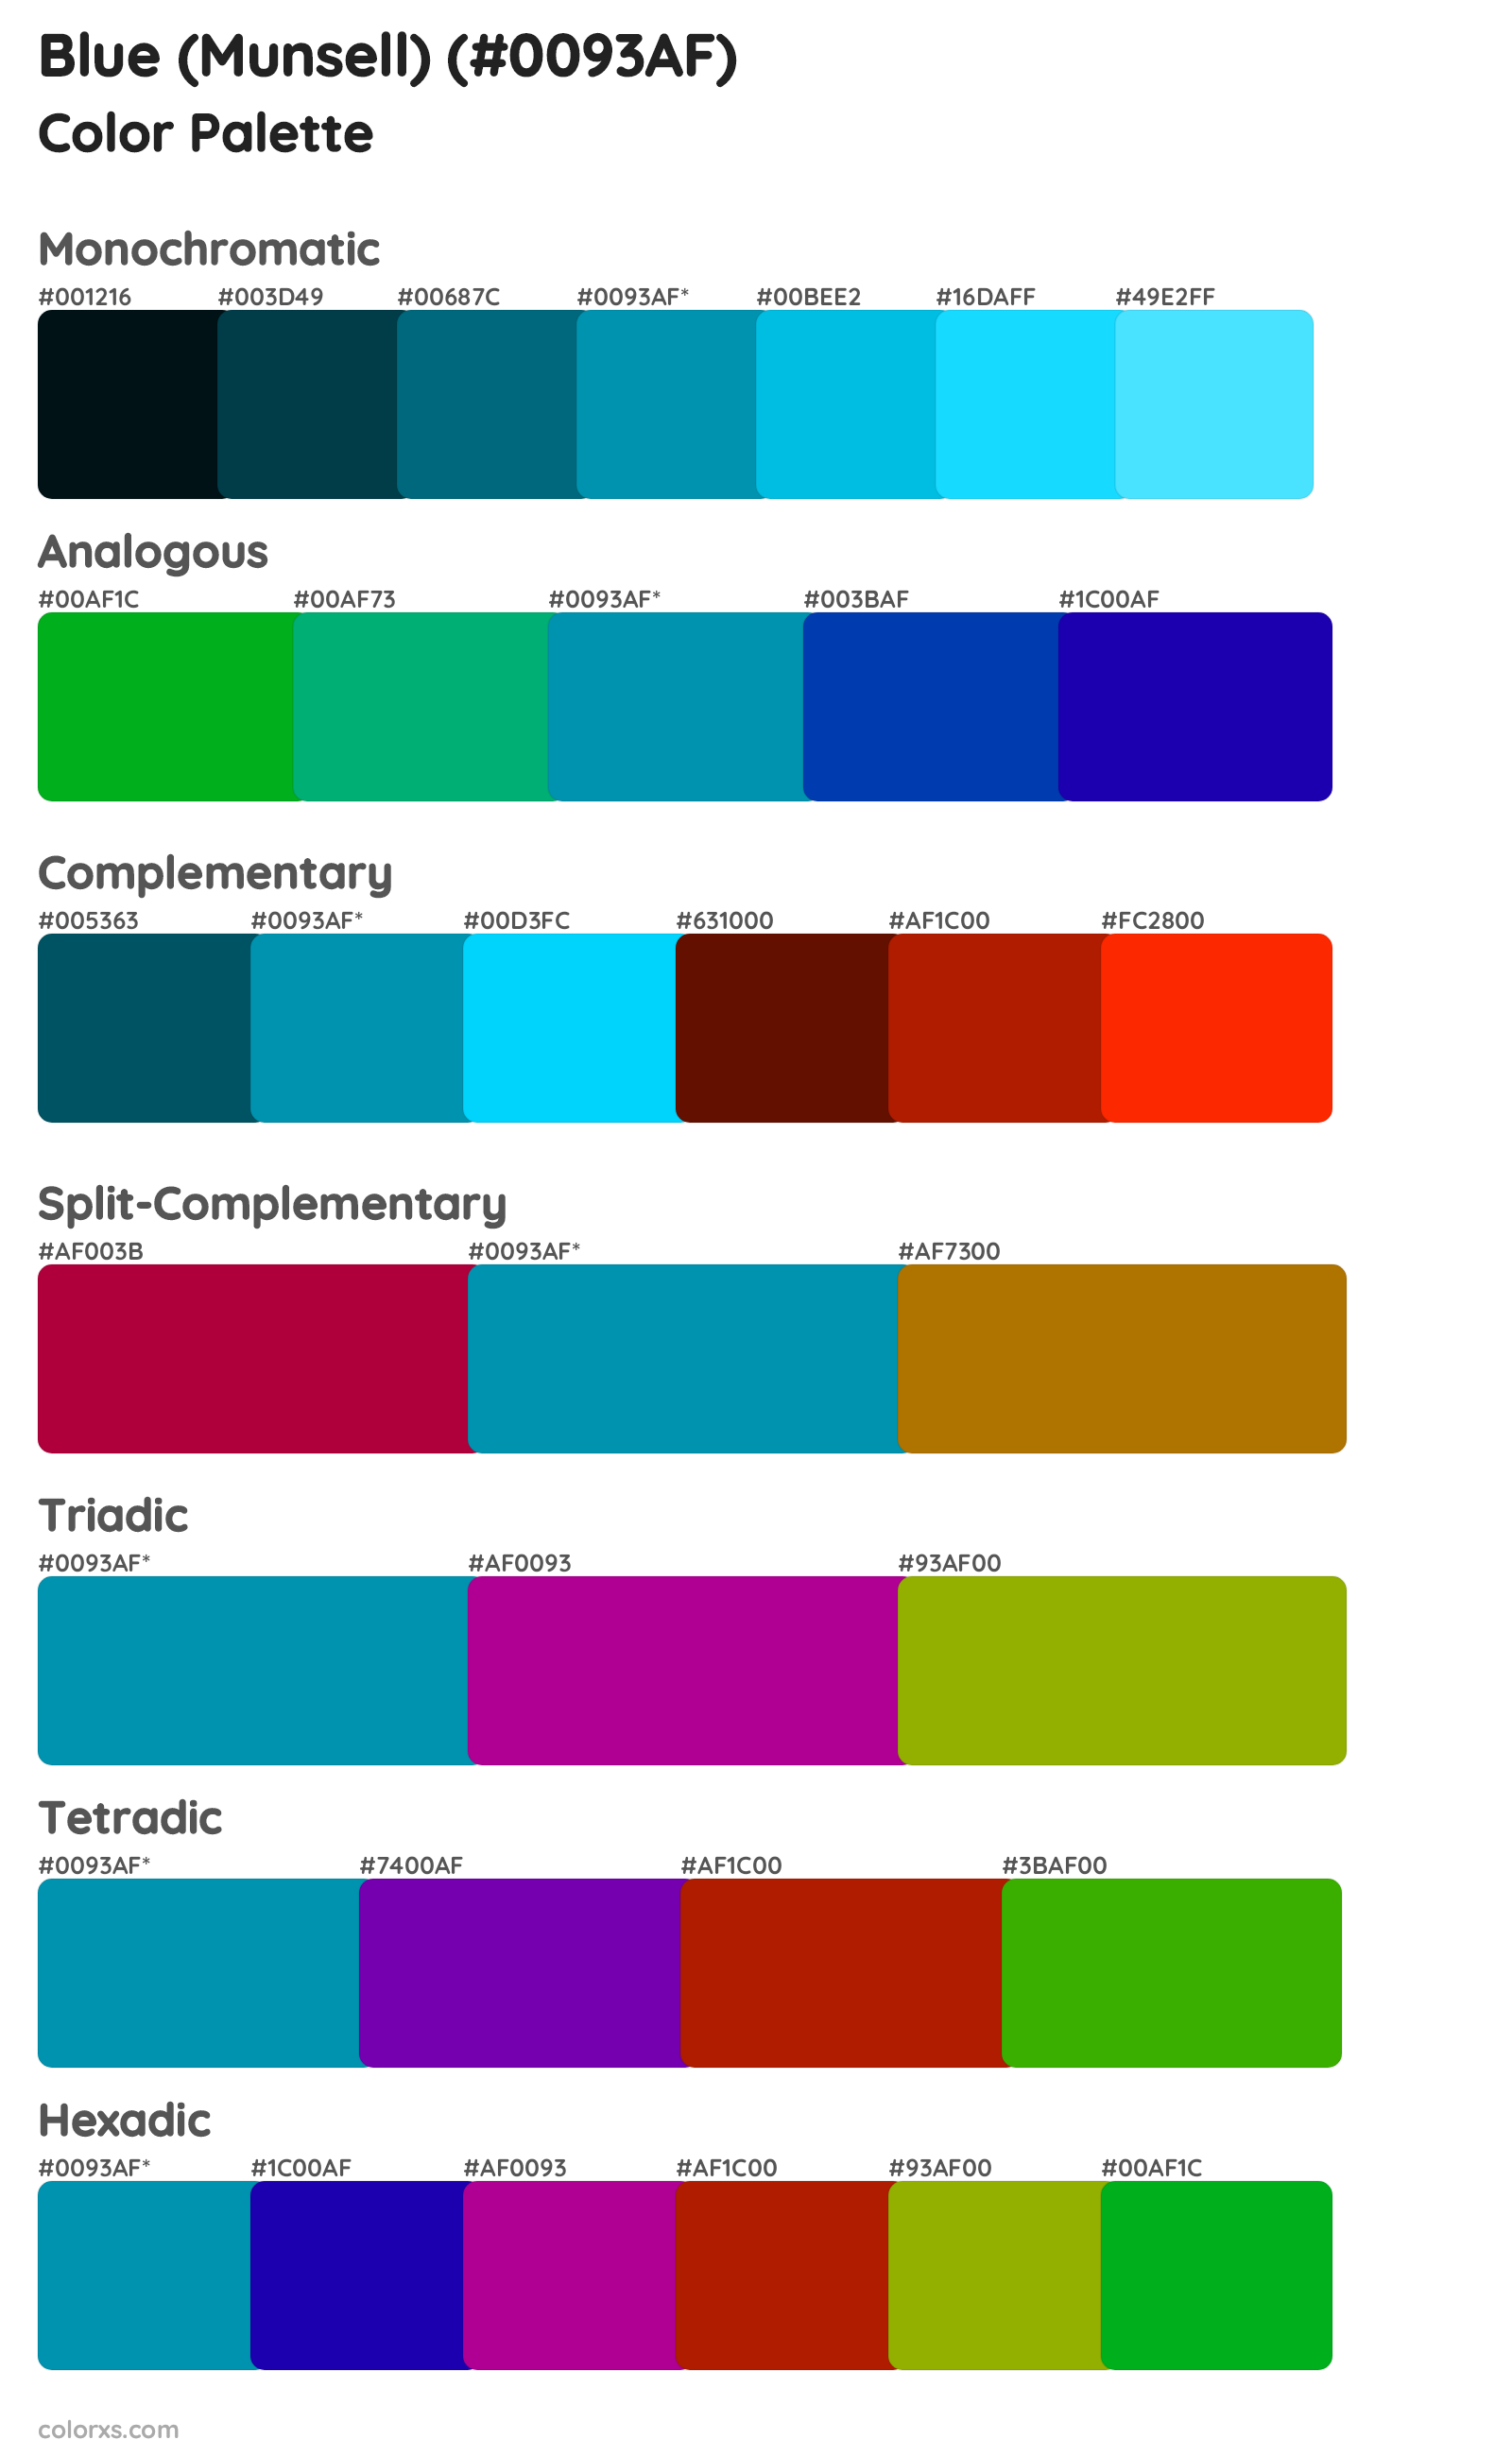 Blue (Munsell) Color Scheme Palettes